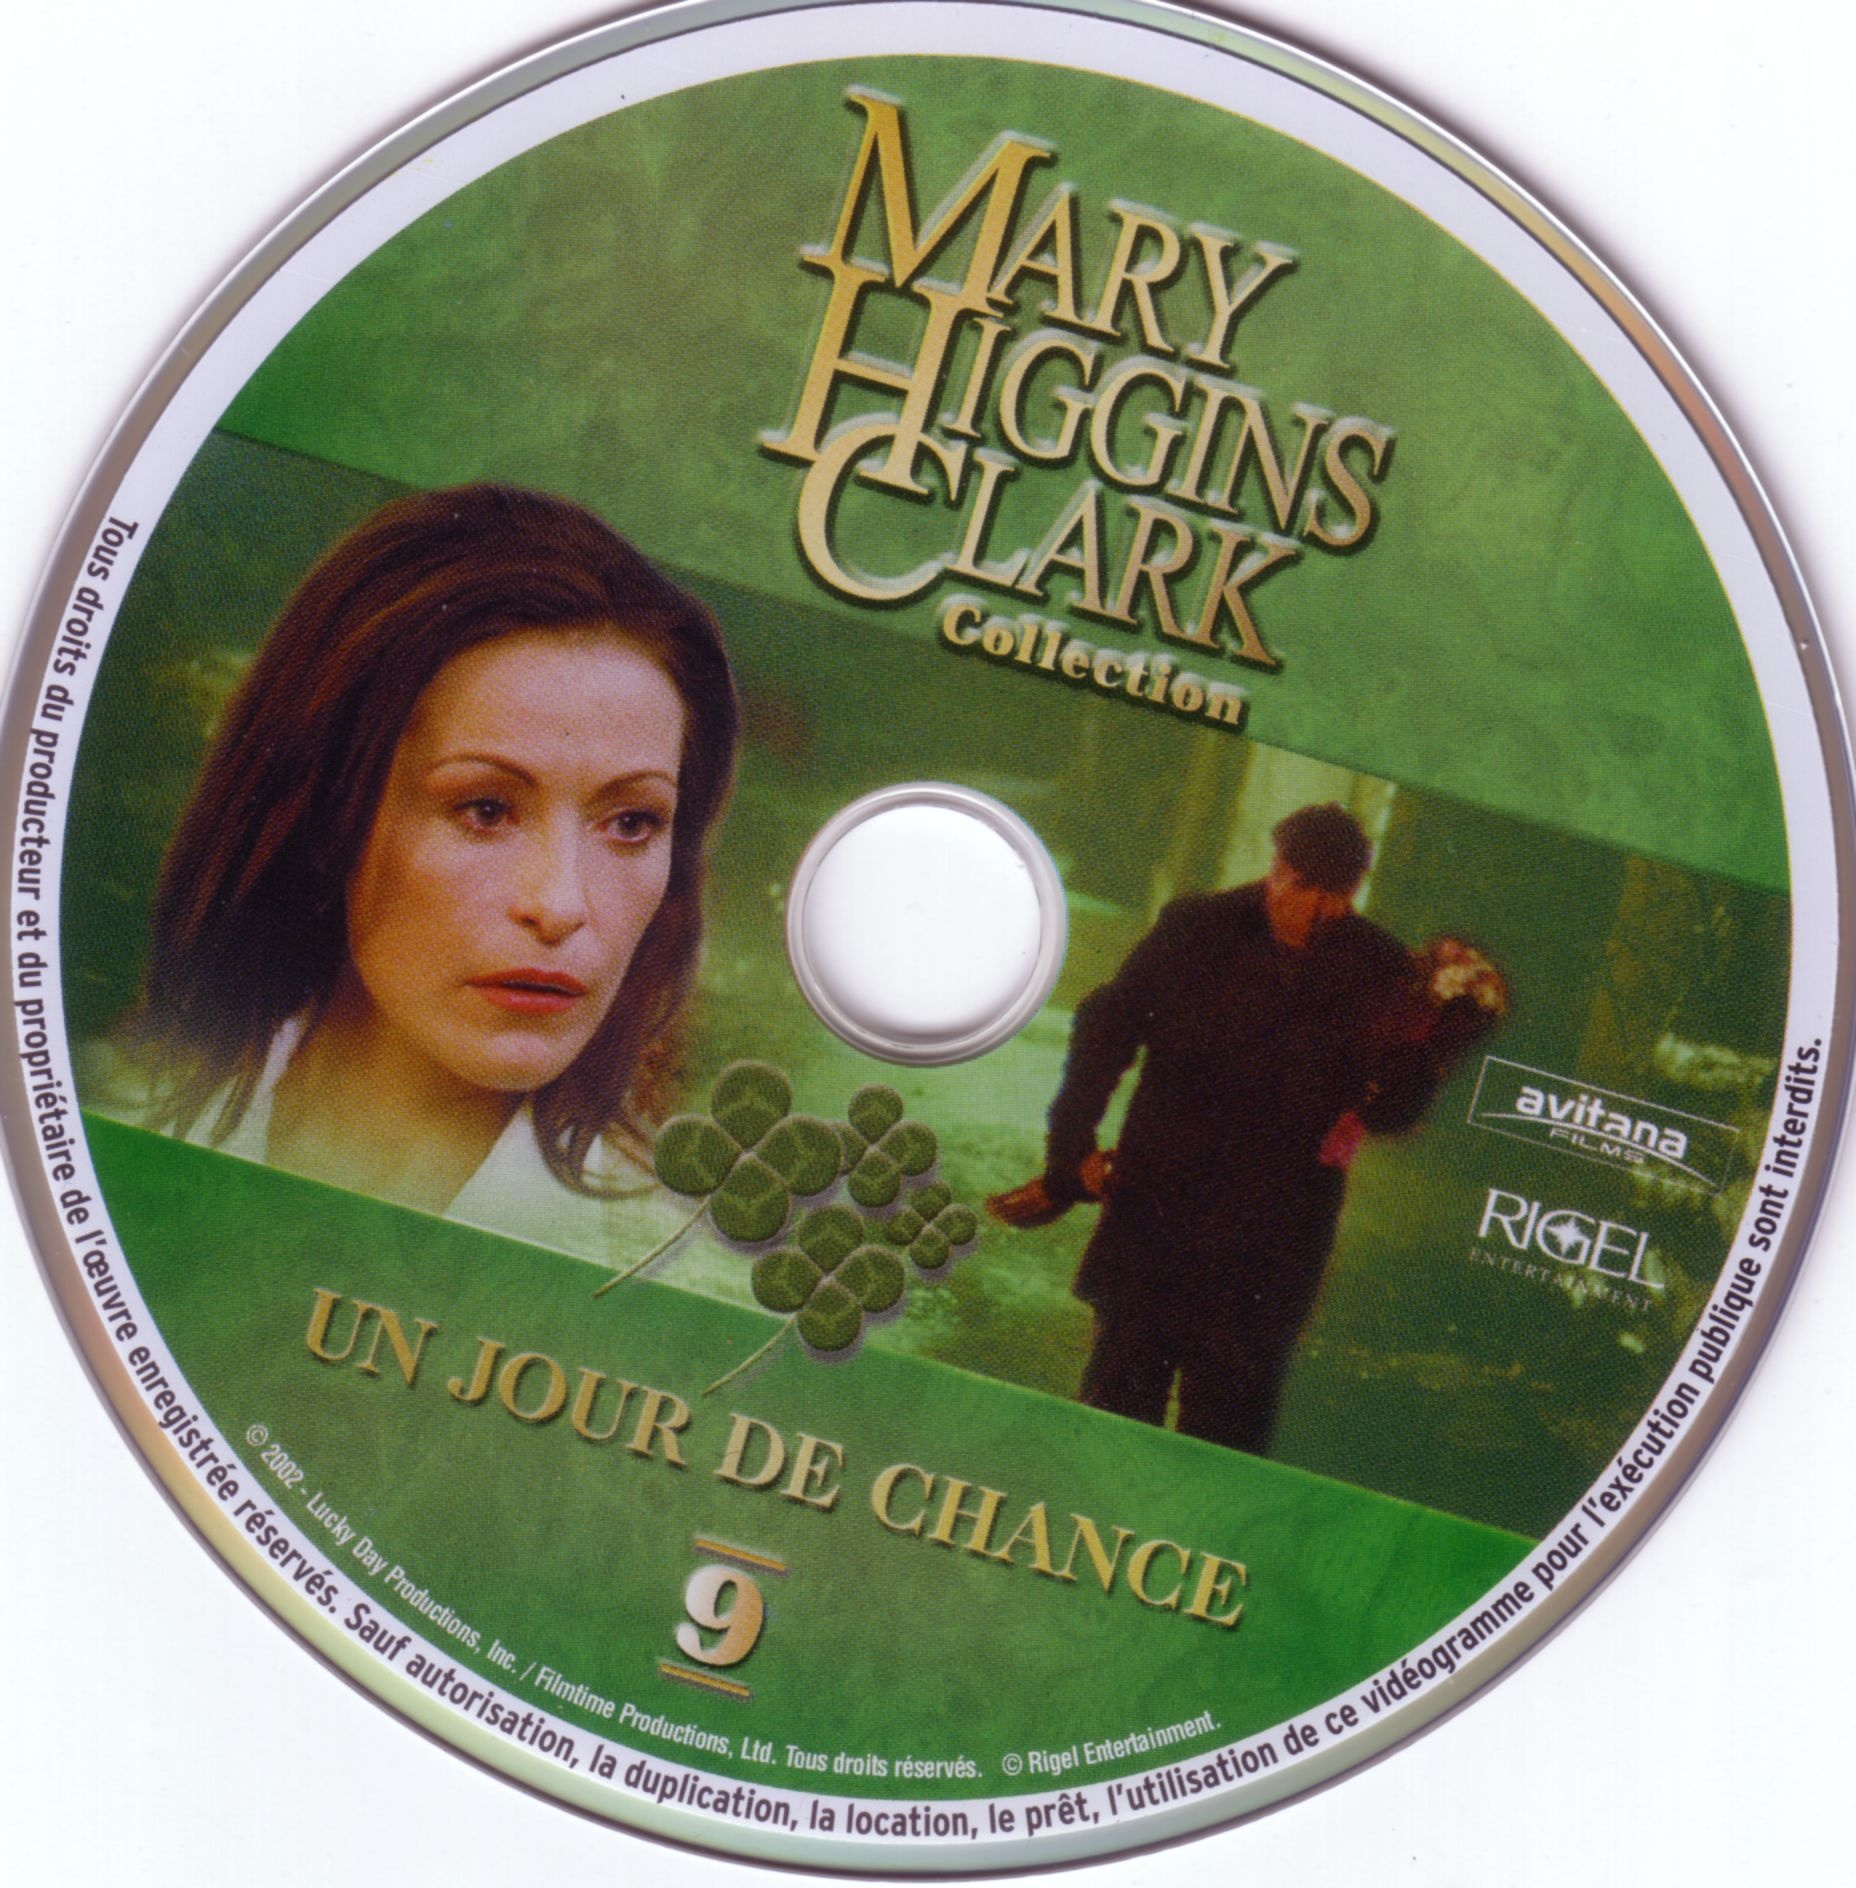 Mary Higgins Clark vol 09 - Un jour de chance